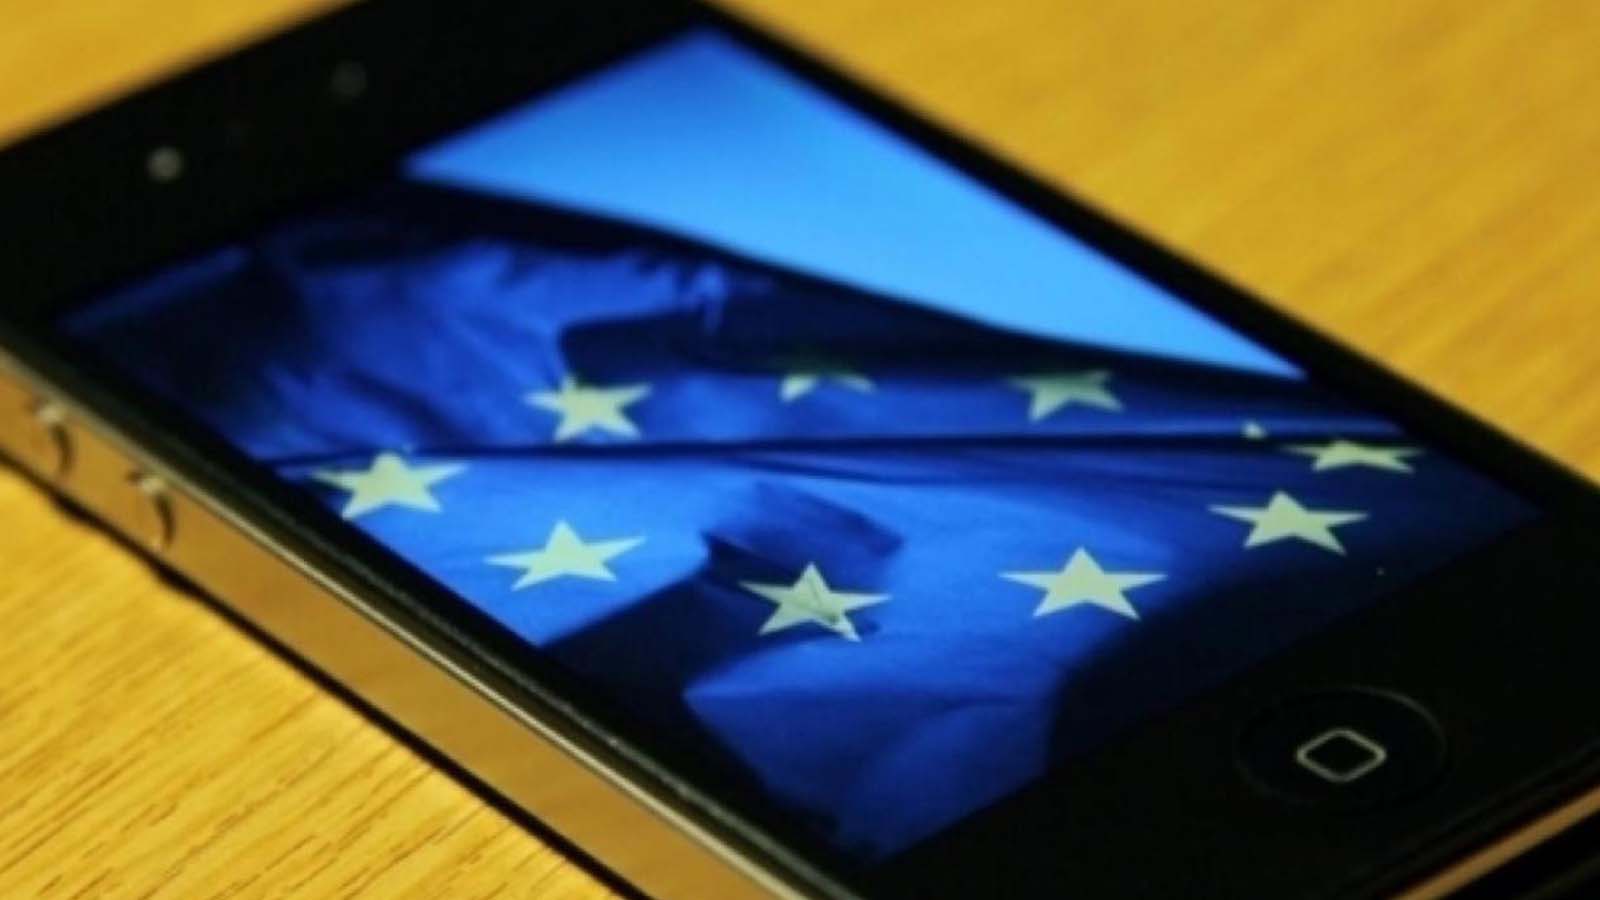 La riduzione dei costi di roaming per gigabyte beneficia gli utenti che viaggiano all'interno dell'UE